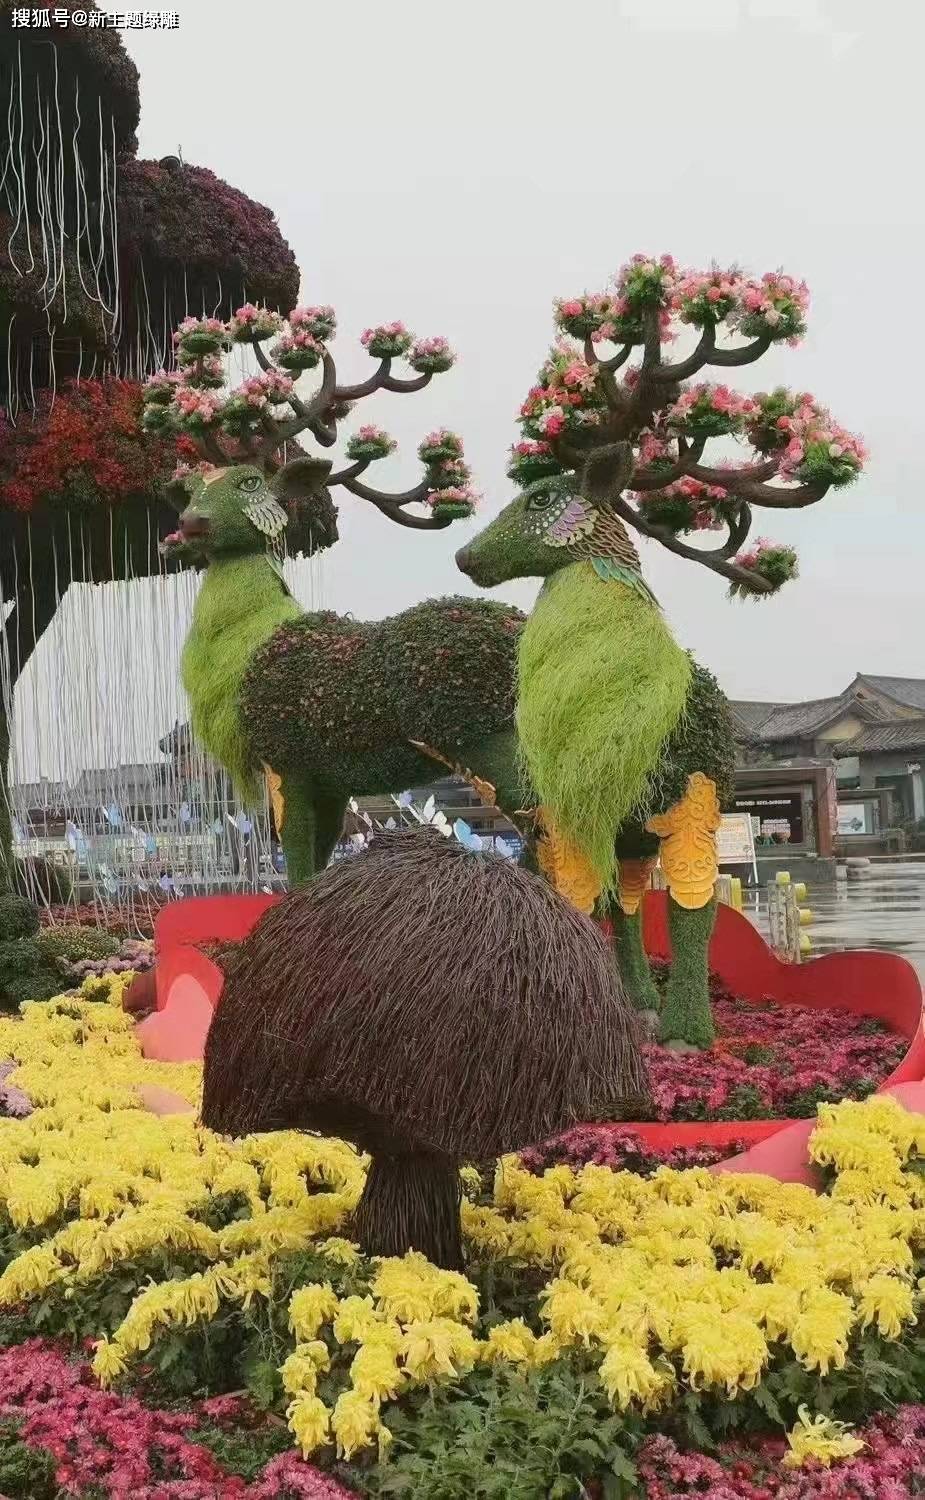 五色草造型植物绿雕,仿真植物绿雕,大型绿雕工艺品等制作,提供绿雕